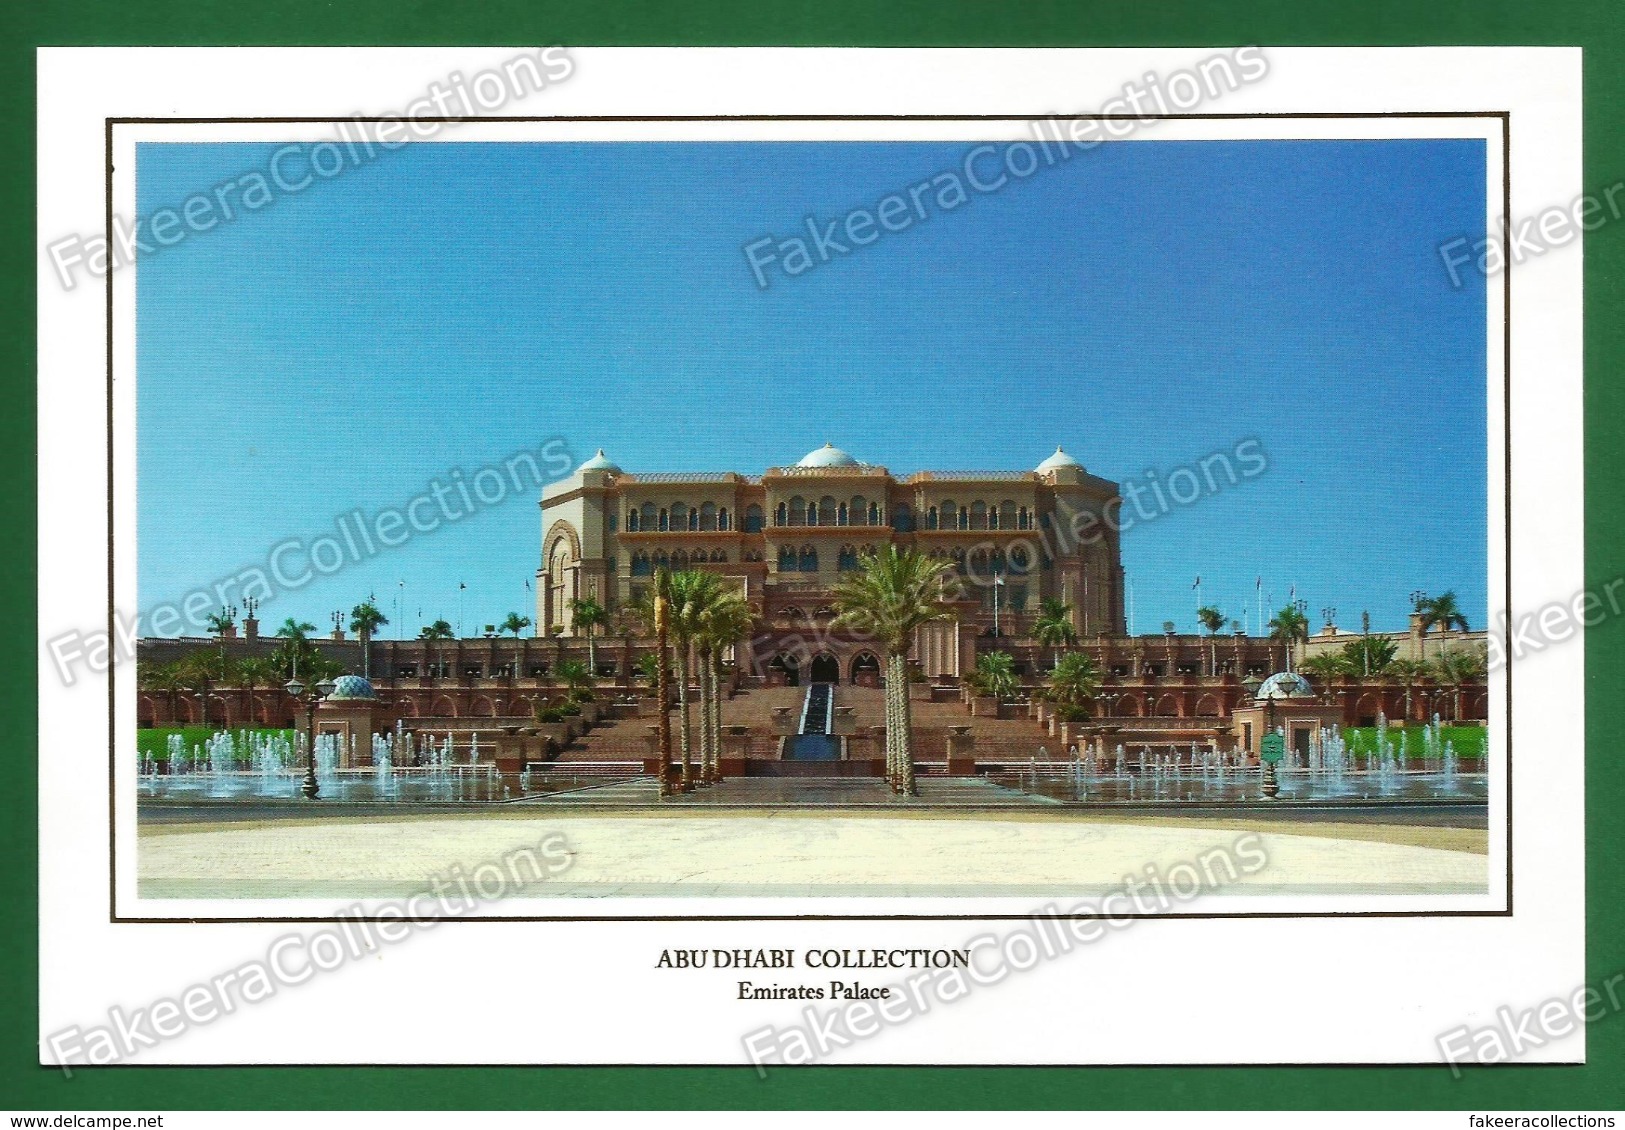 UNITED ARAB EMIRATES / UAE - ABU DHABI Emirates Palace - Postcard # 54 - Unused As Scan - Emirats Arabes Unis